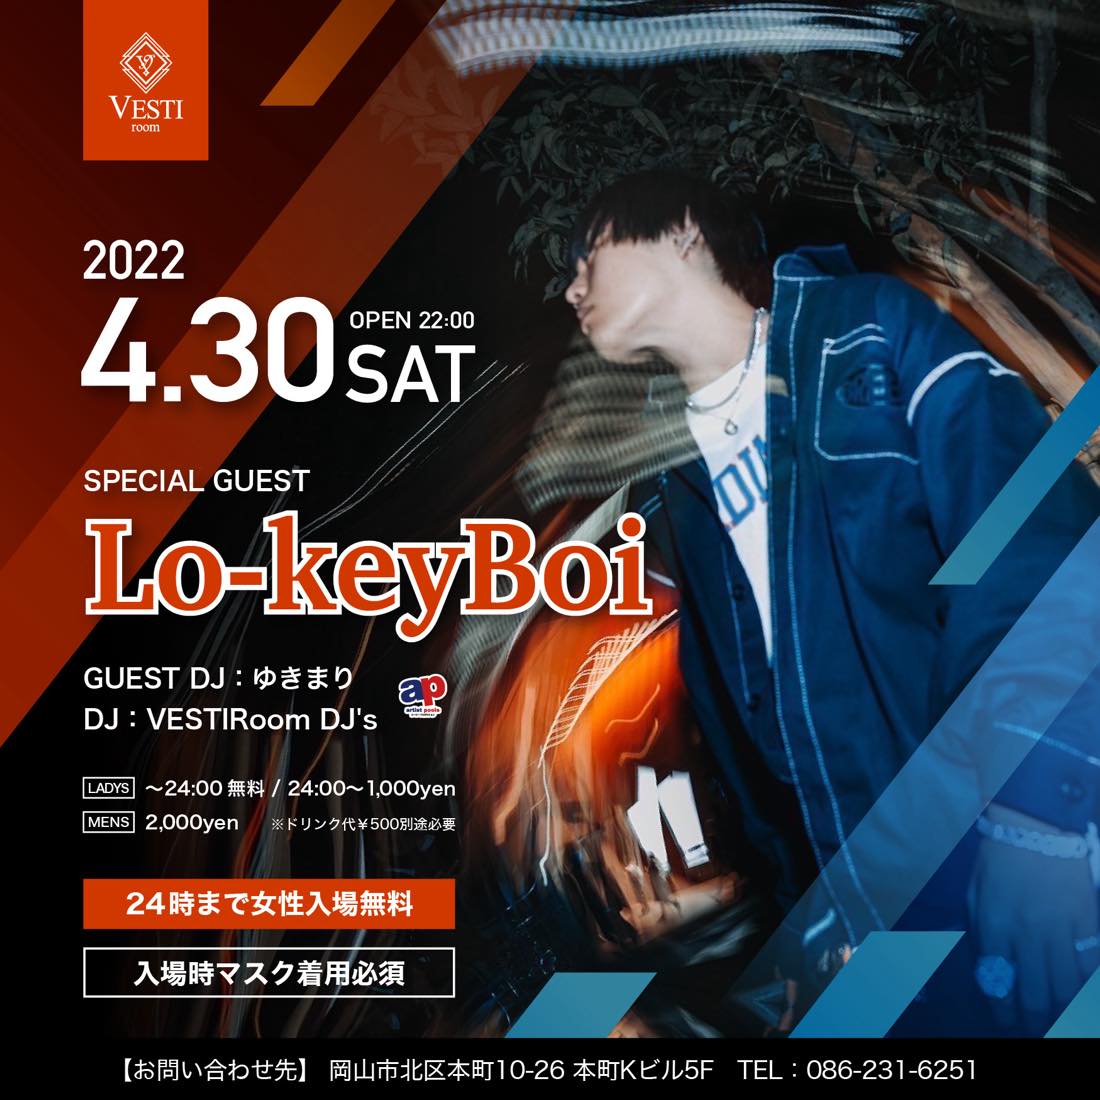 SPECIAL GUEST : Lo-keyBoy ～24時まで女性入場無料～